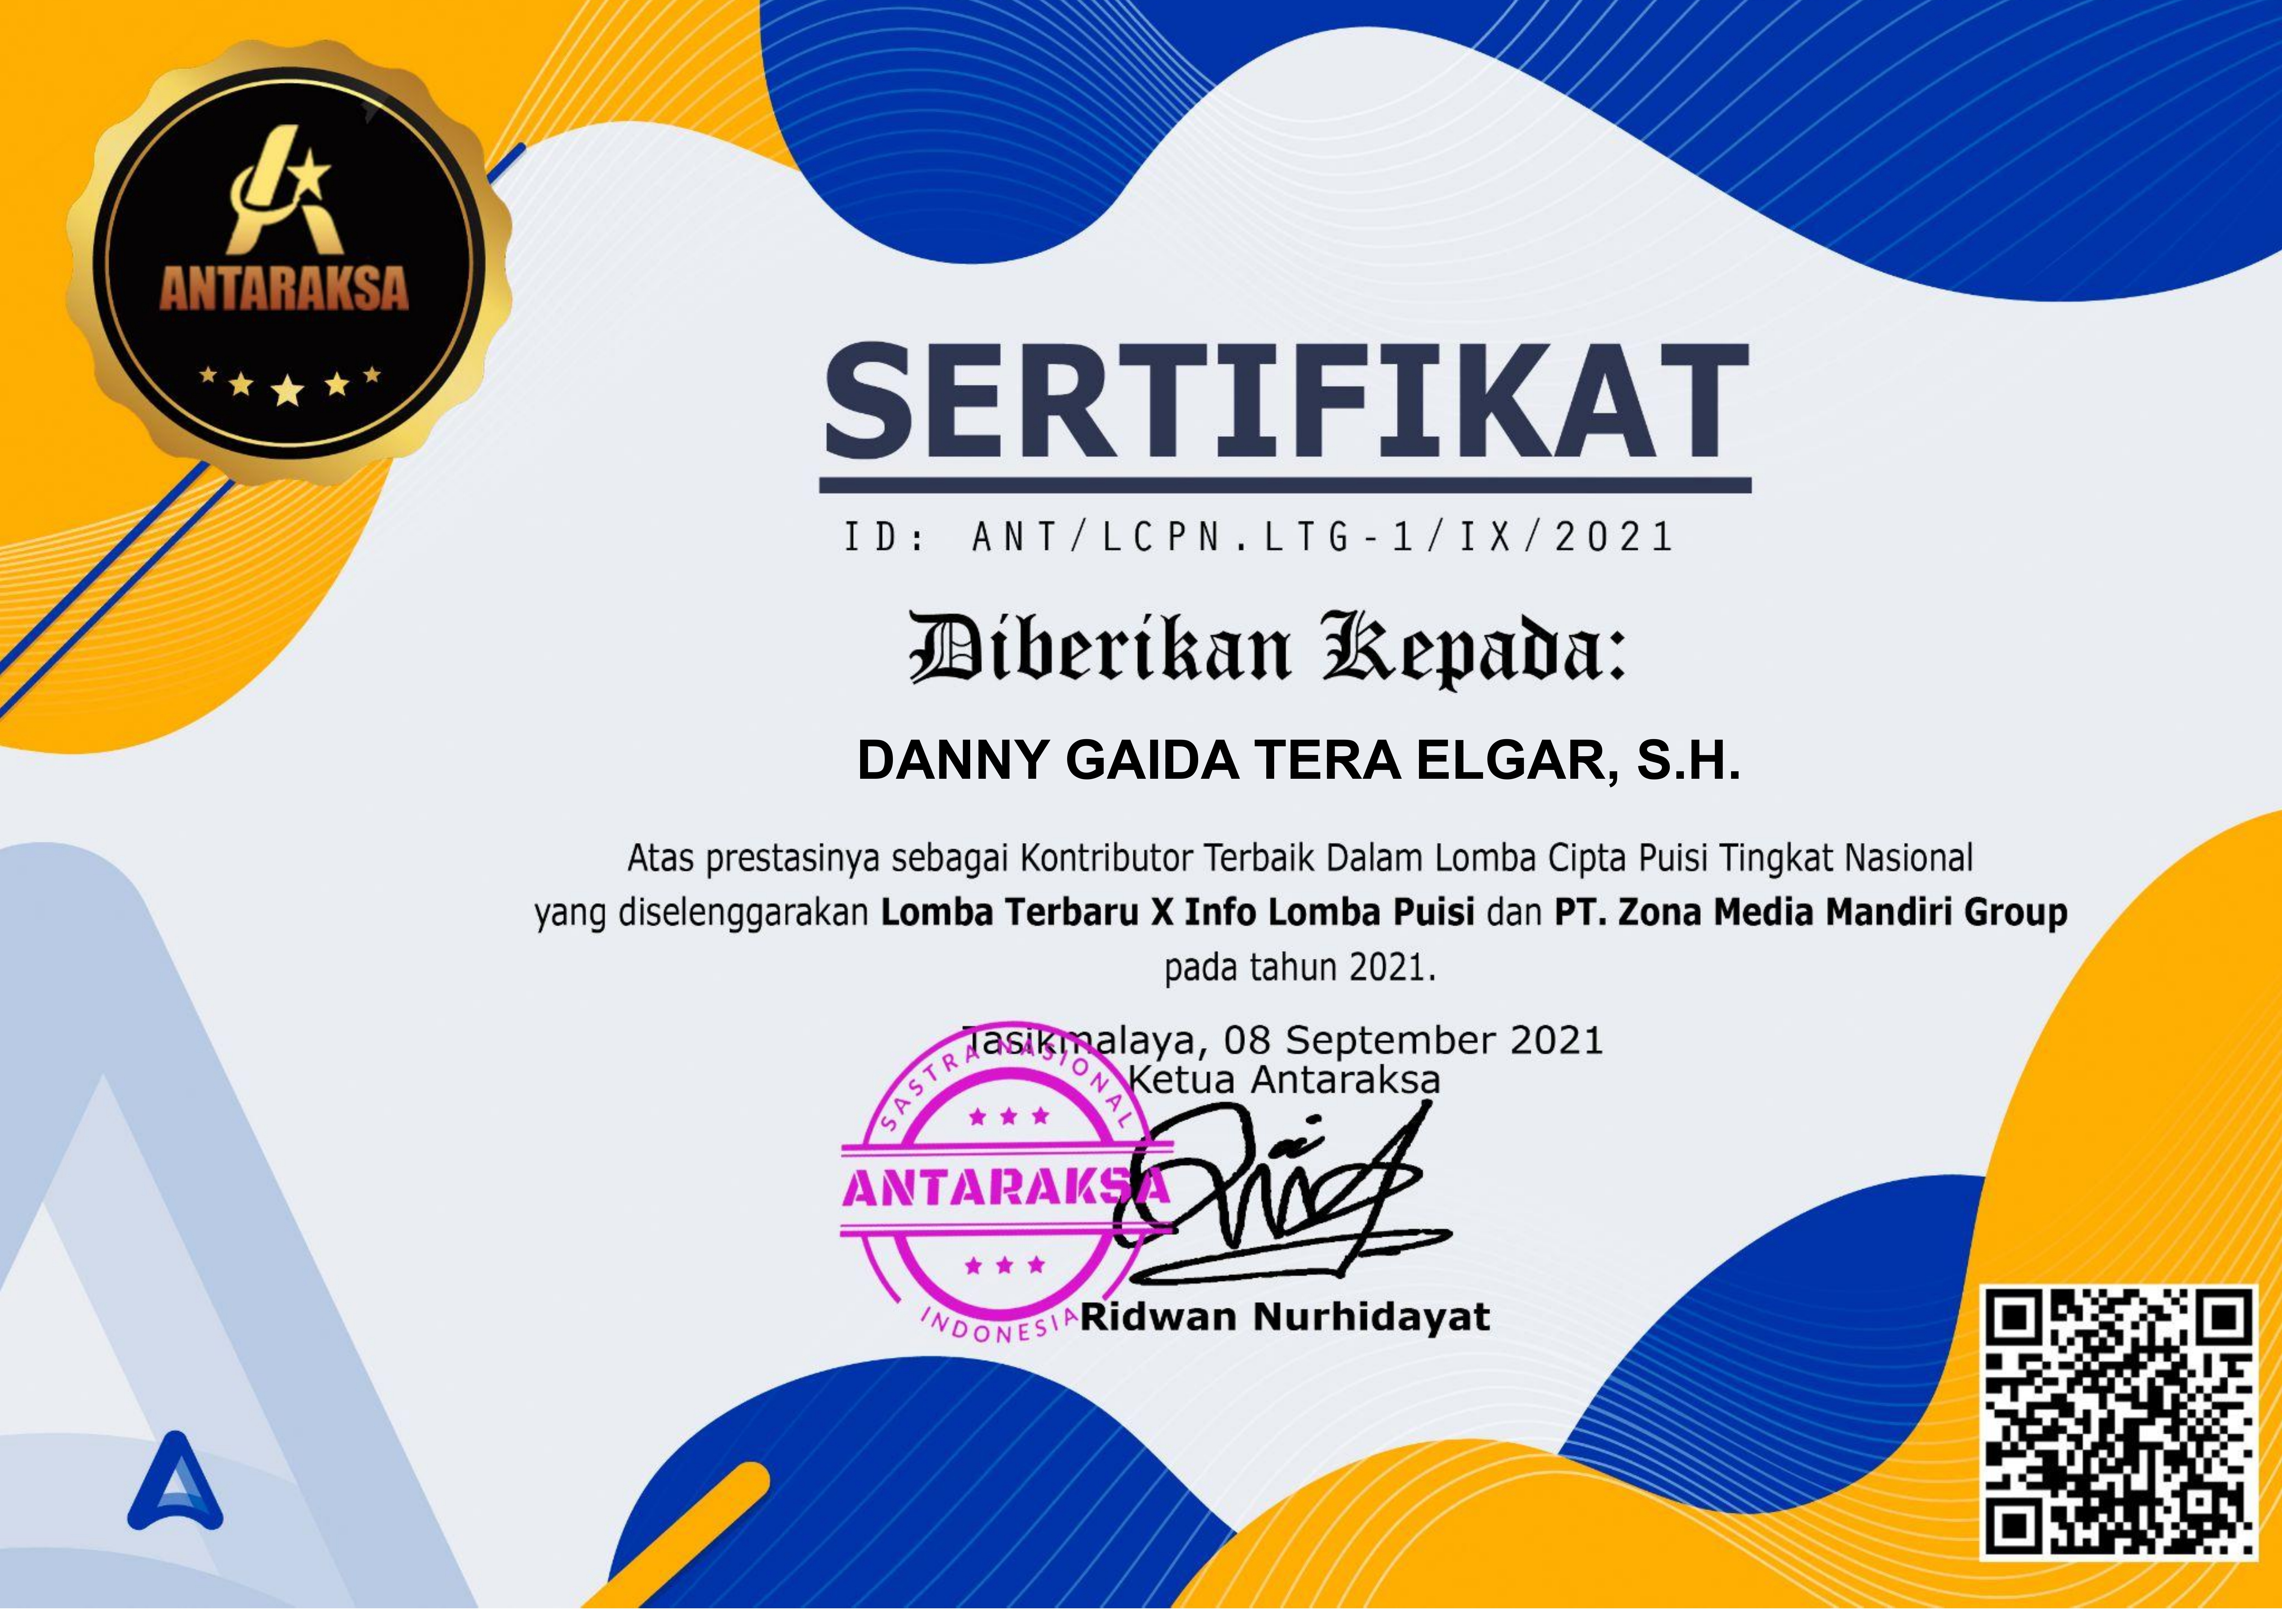 Sertifikat Penghargaan KONTRIBUTOR TERBAIK Dalam Lomba Cipta Puisi Tingkat Nasional ANTARAKSA - SASTRA NASIONAL INDONESIA